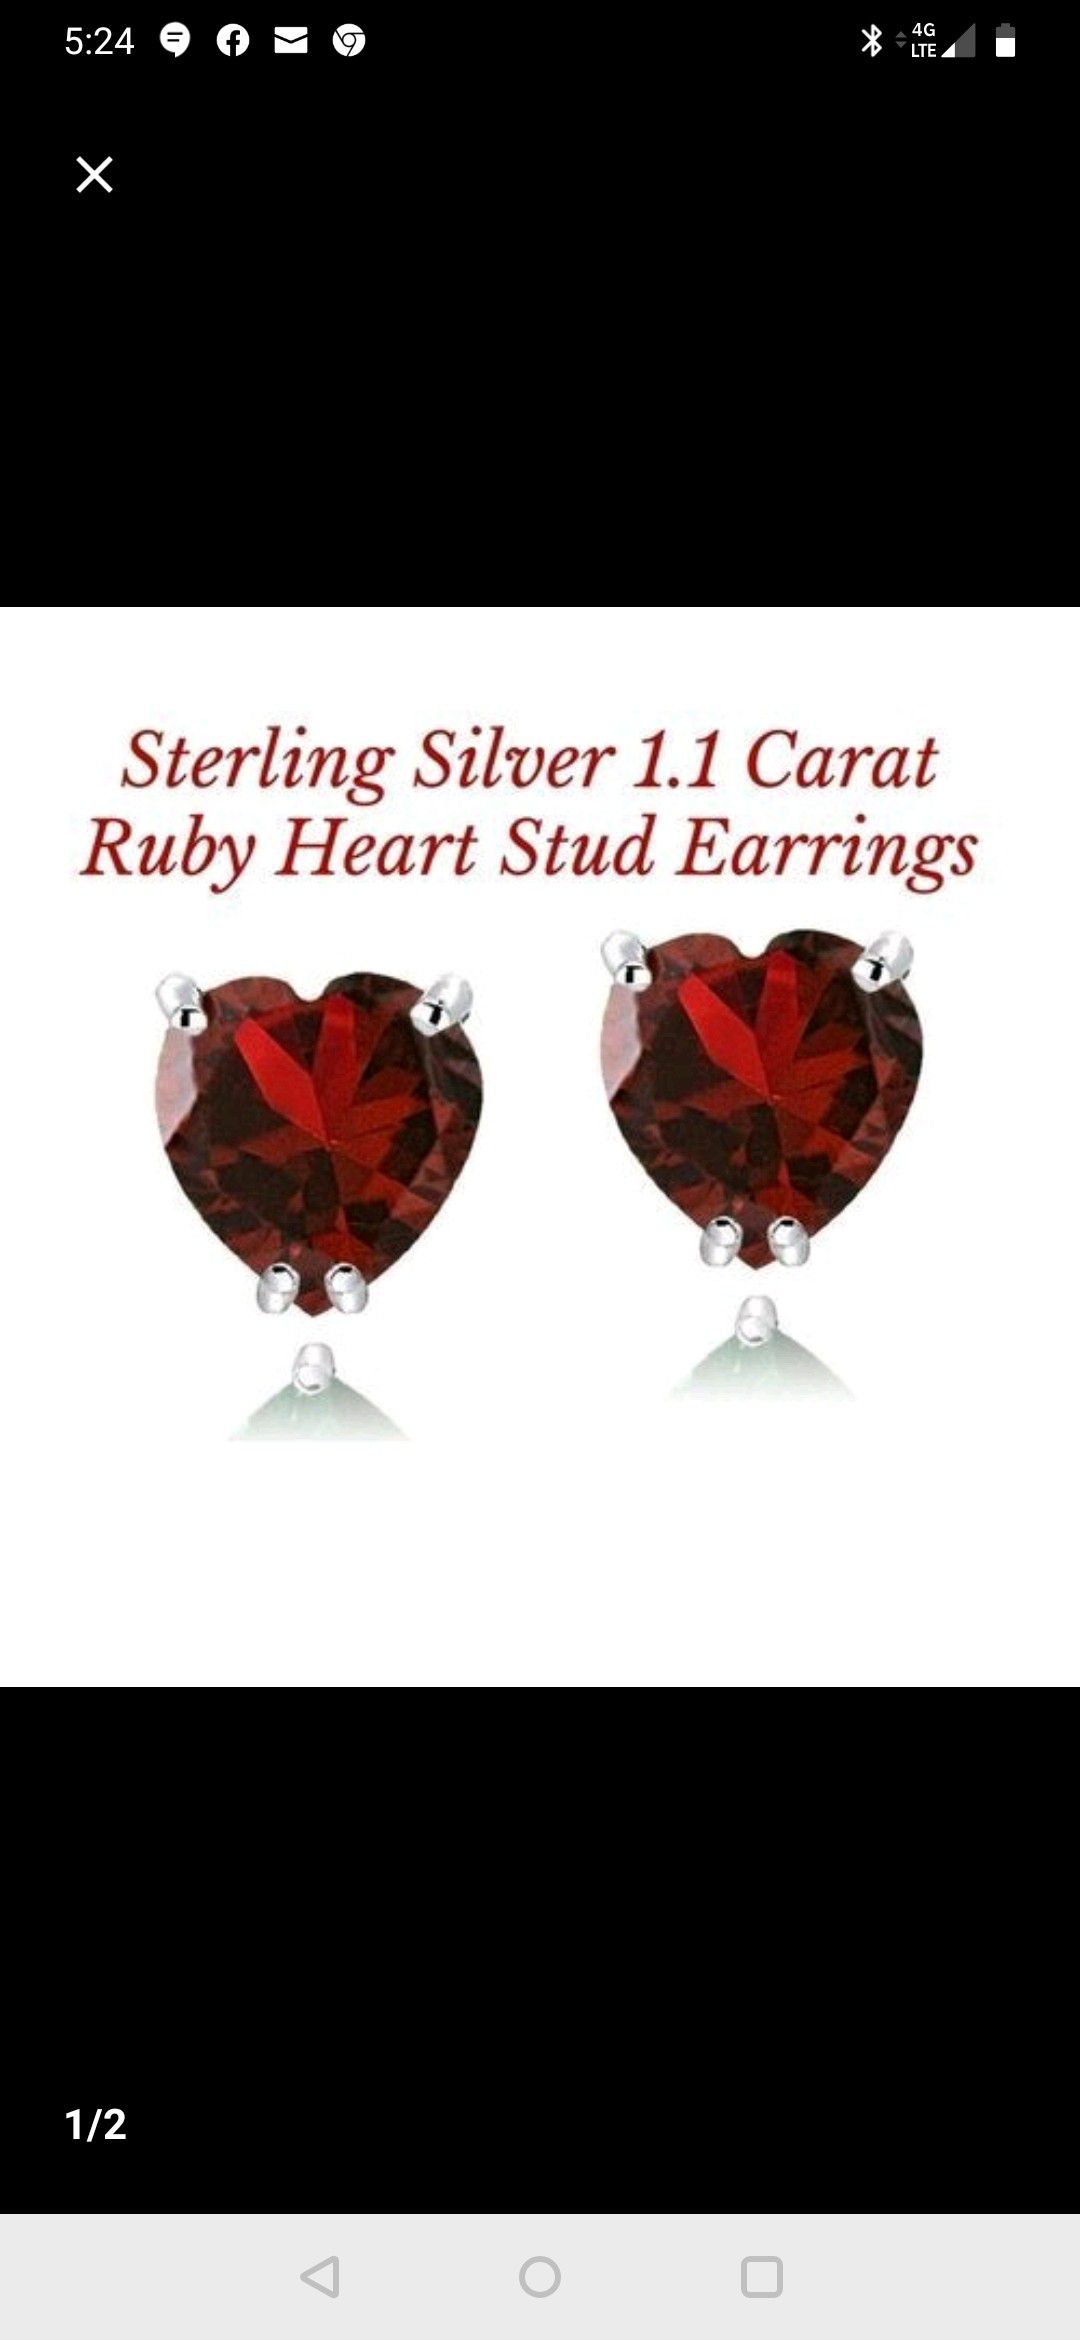 Red ruby heart-shaped 1.1 karat earrings in sterling silver setting